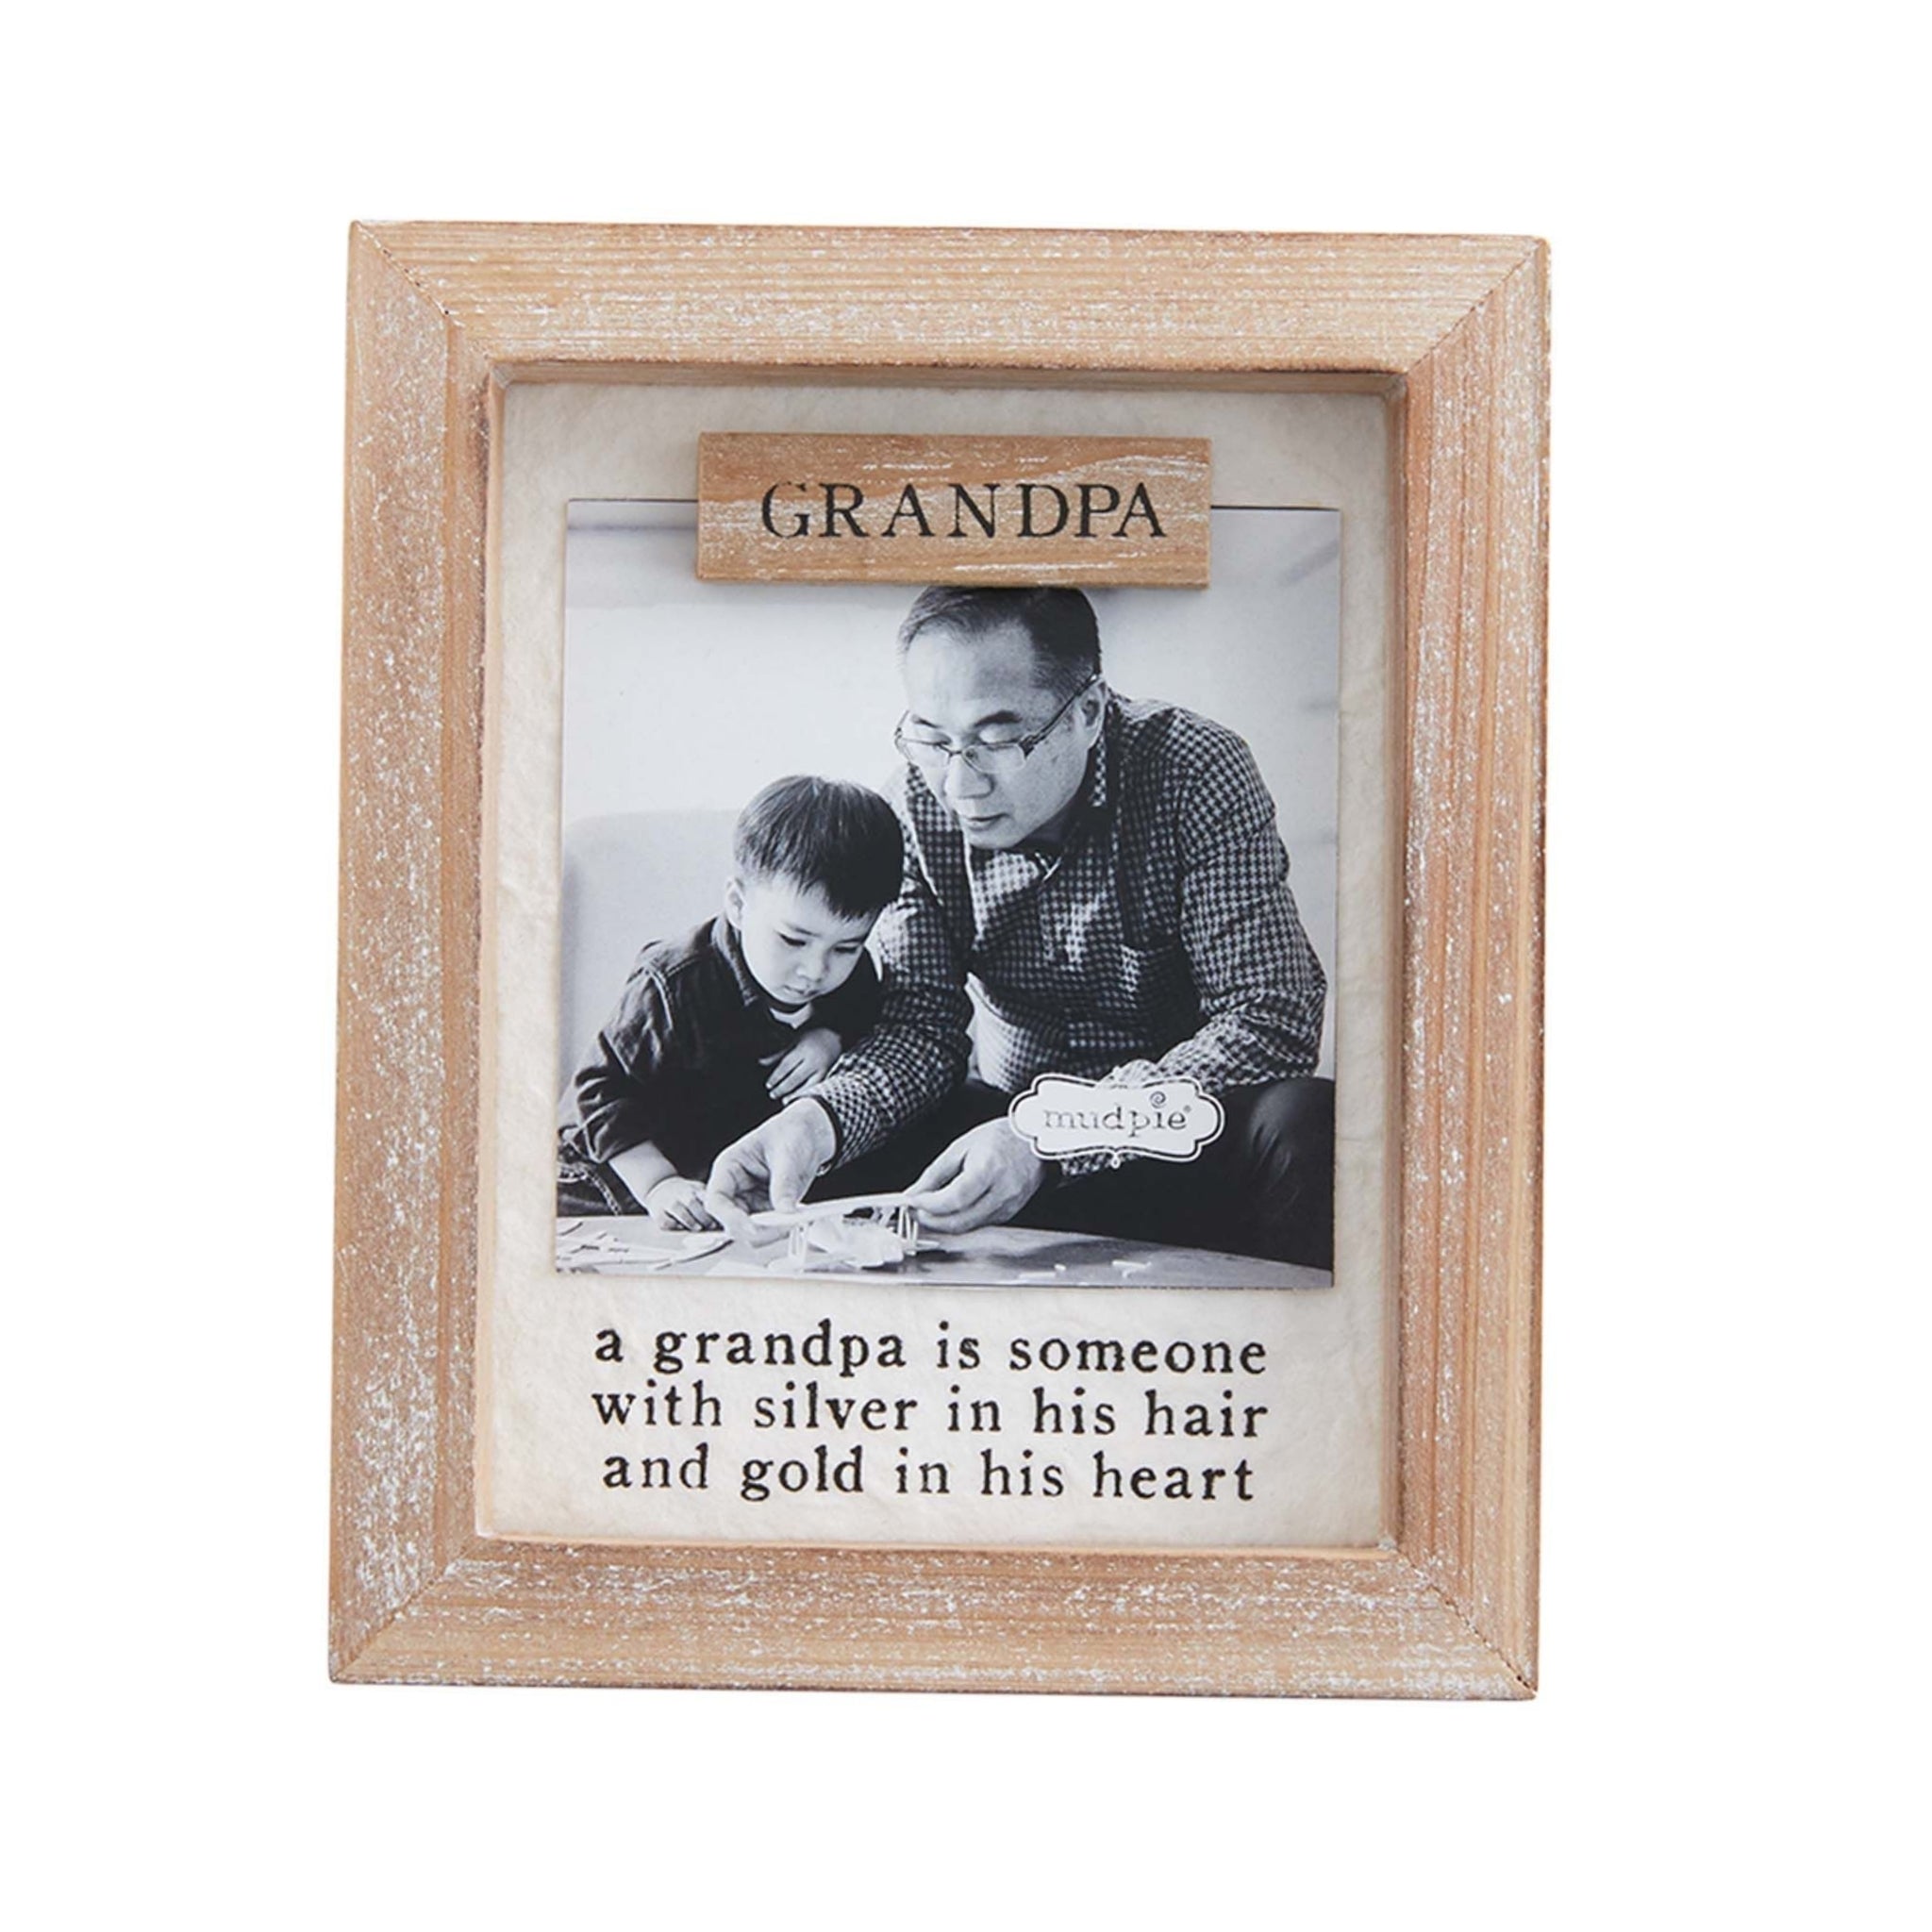 grandpa magnet frame